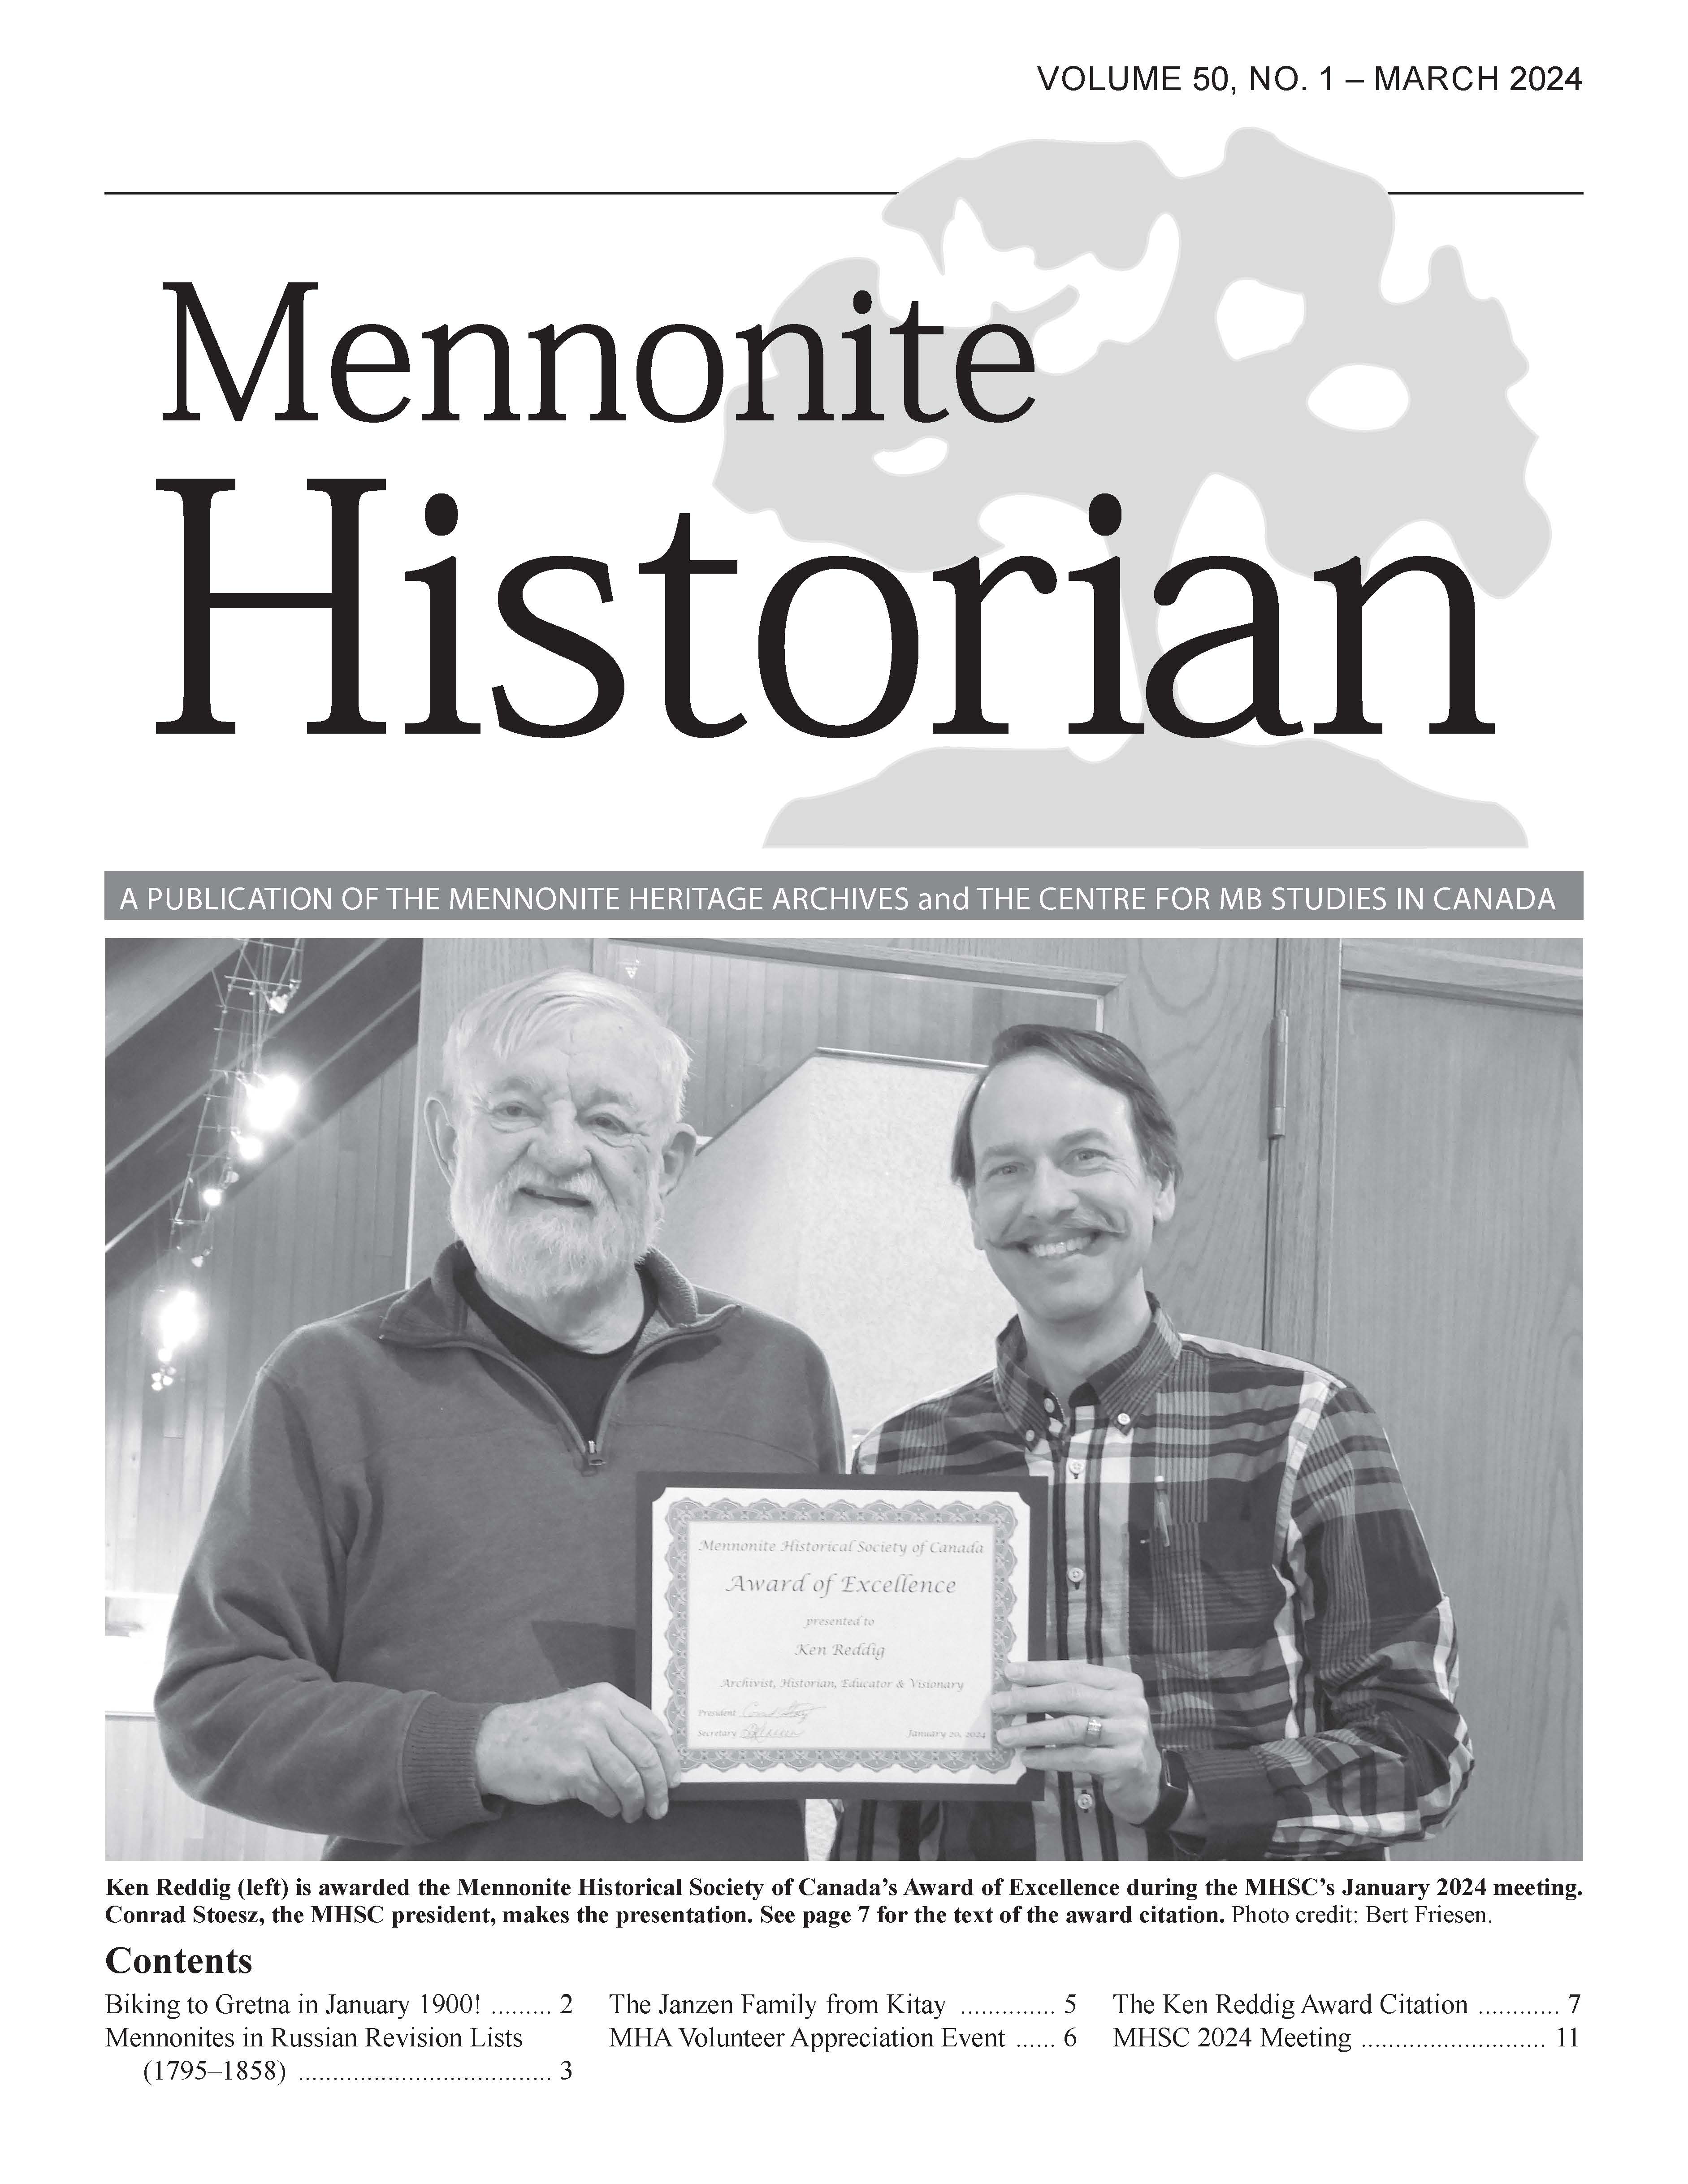 Mennonite Historian (Mar. 2024)